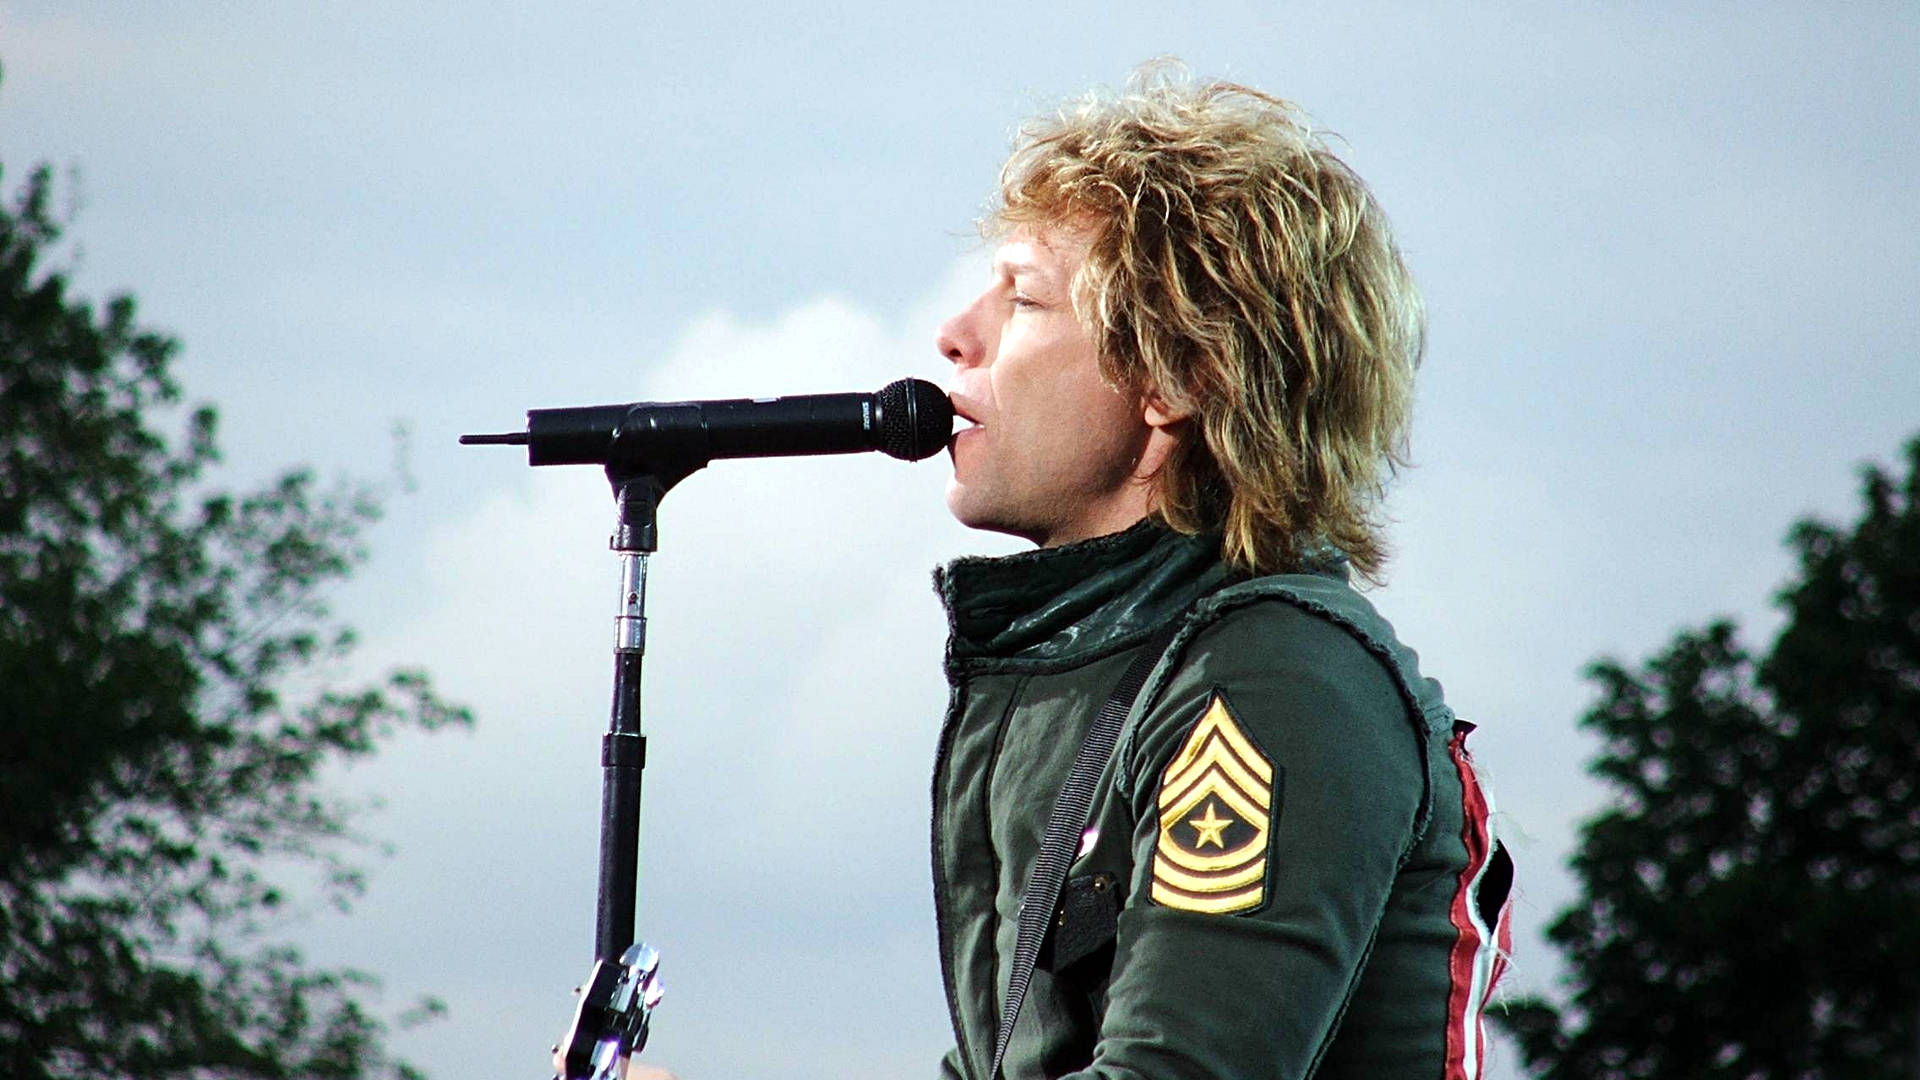 Cantanteestadounidense Jon Bon Jovi 2006 Nijmegen Países Bajos. Fondo de pantalla